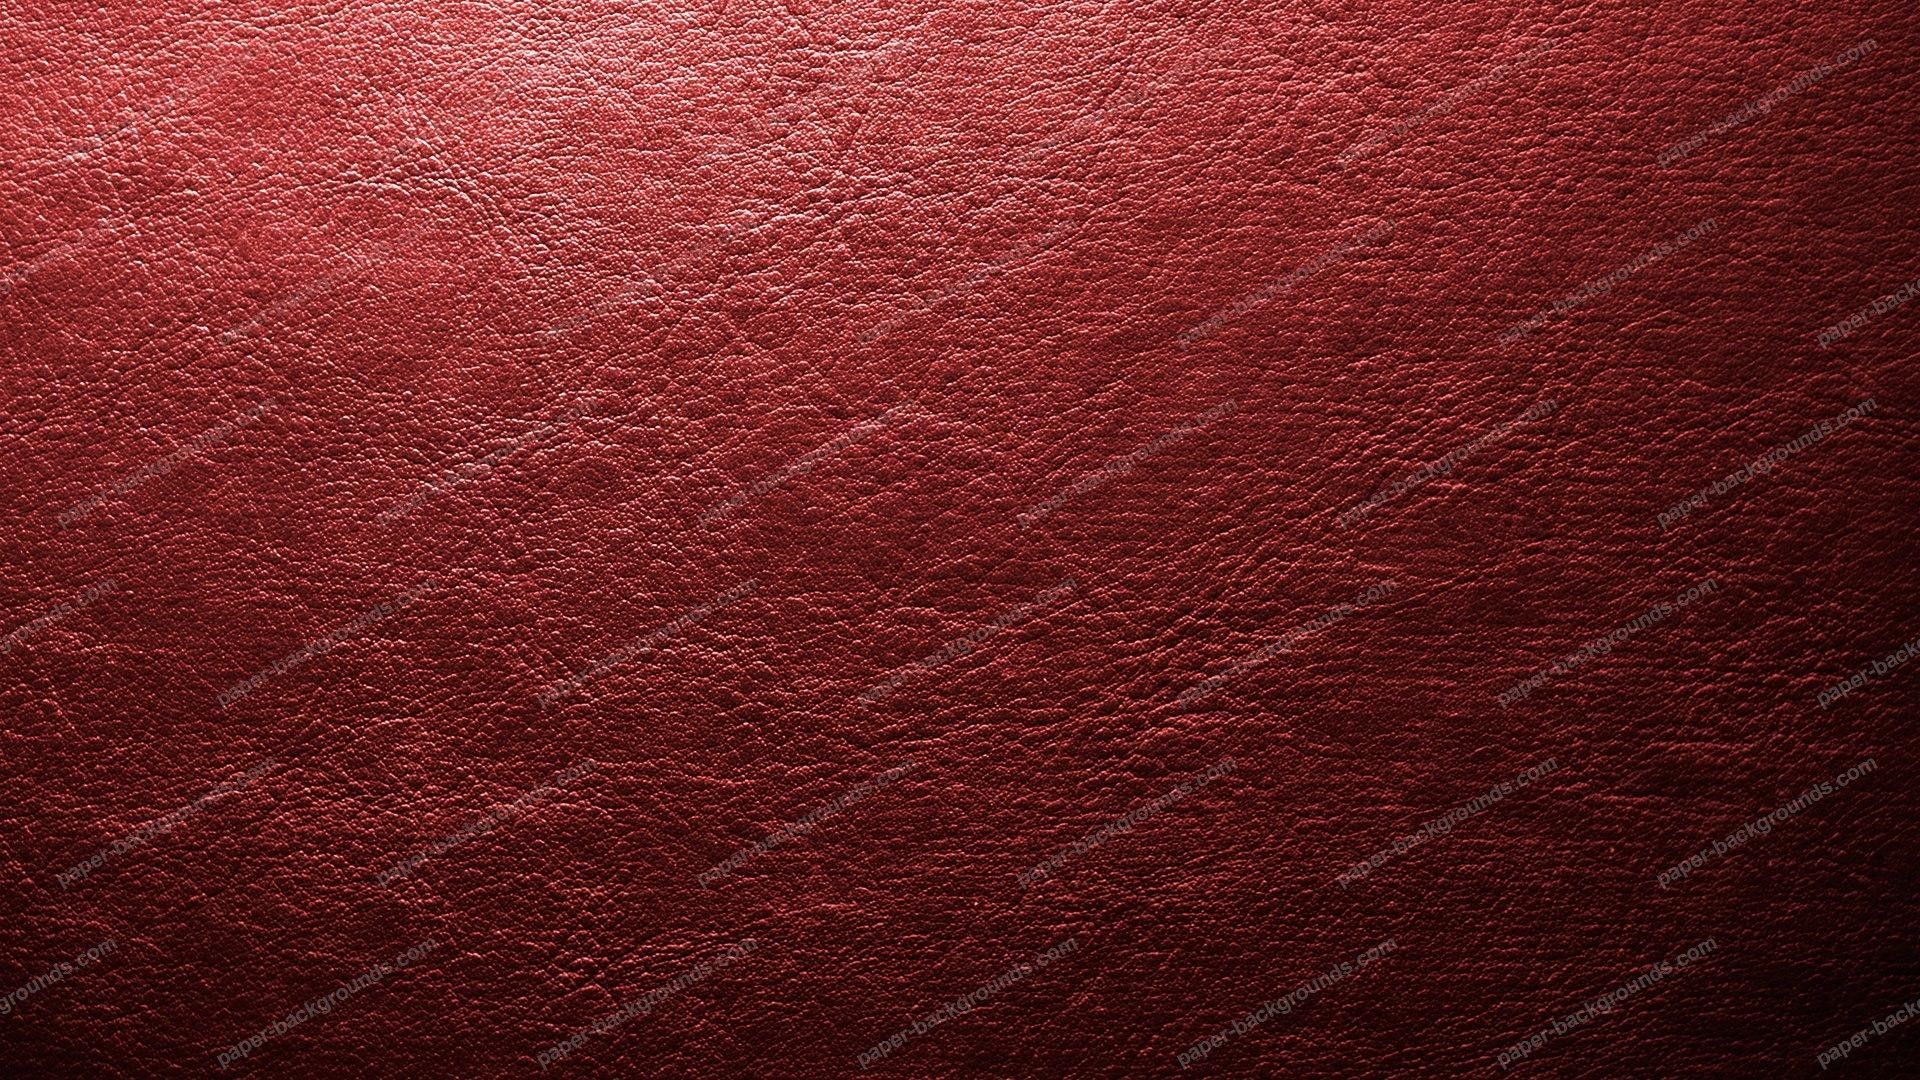 Fondos de pantalla de color rojo liso de alta definición - Fondo rojo de cuero